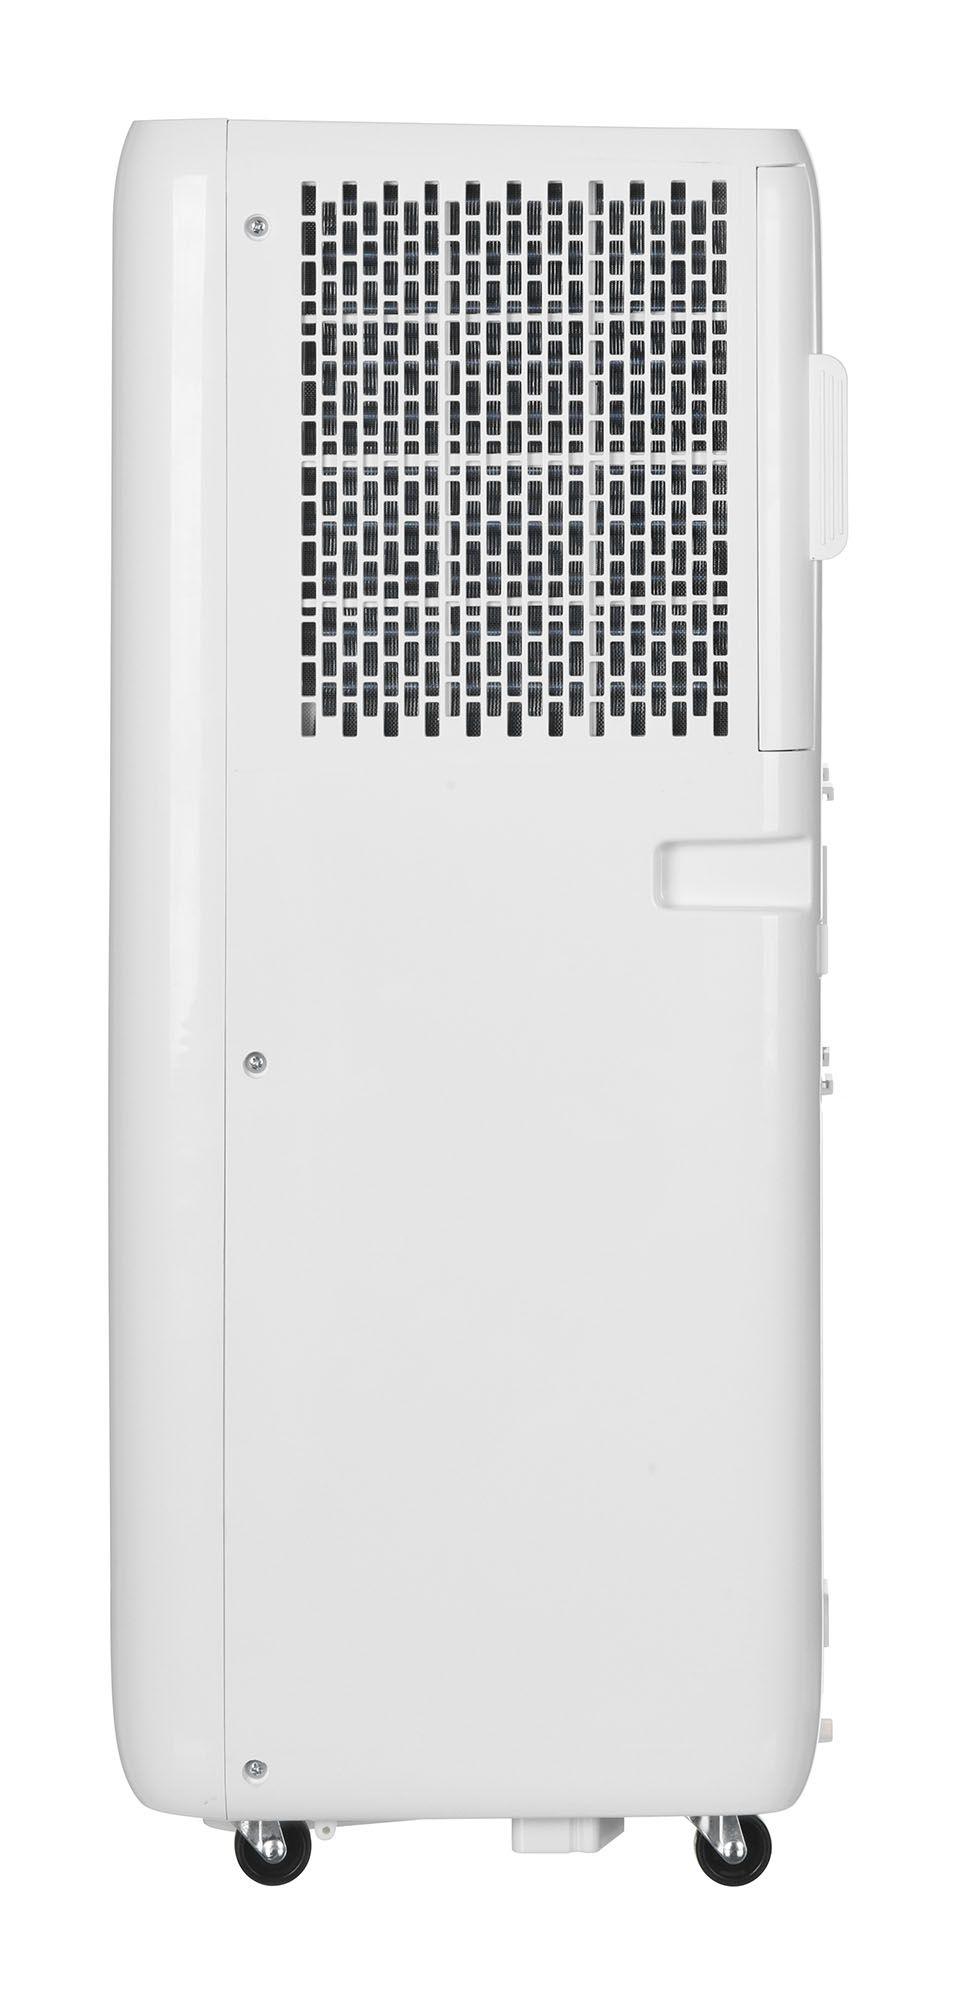 Klimatyzator przenośny Activejet KPS-7000APP